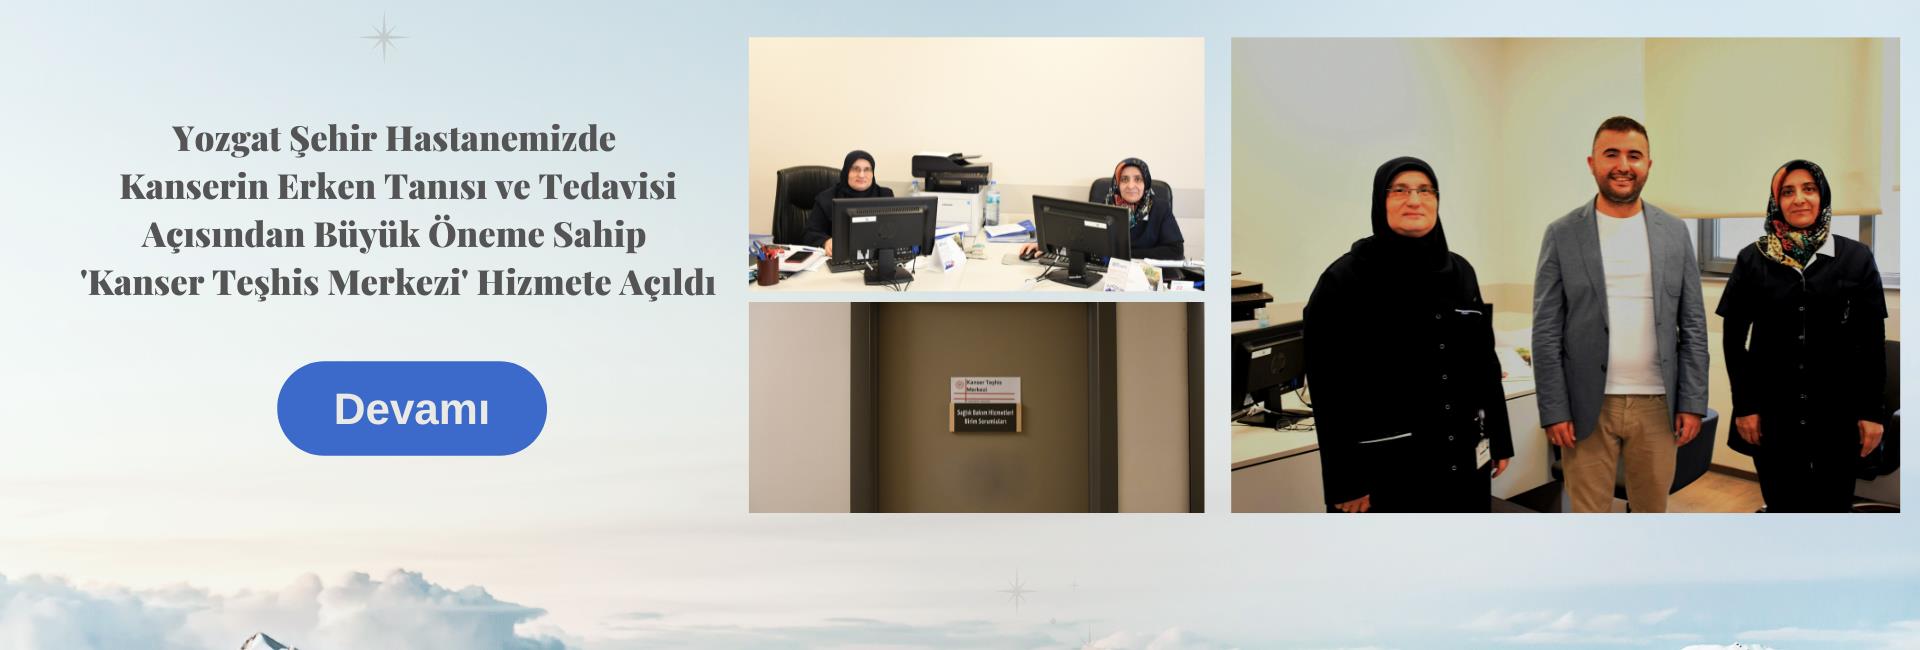 Yozgat Şehir Hastanemizde Kanserin Erken Tanısı ve Tedavisi Açısından Büyük Öneme Sahip 'Kanser Teşhis Merkezi' Hizmete Açıldı